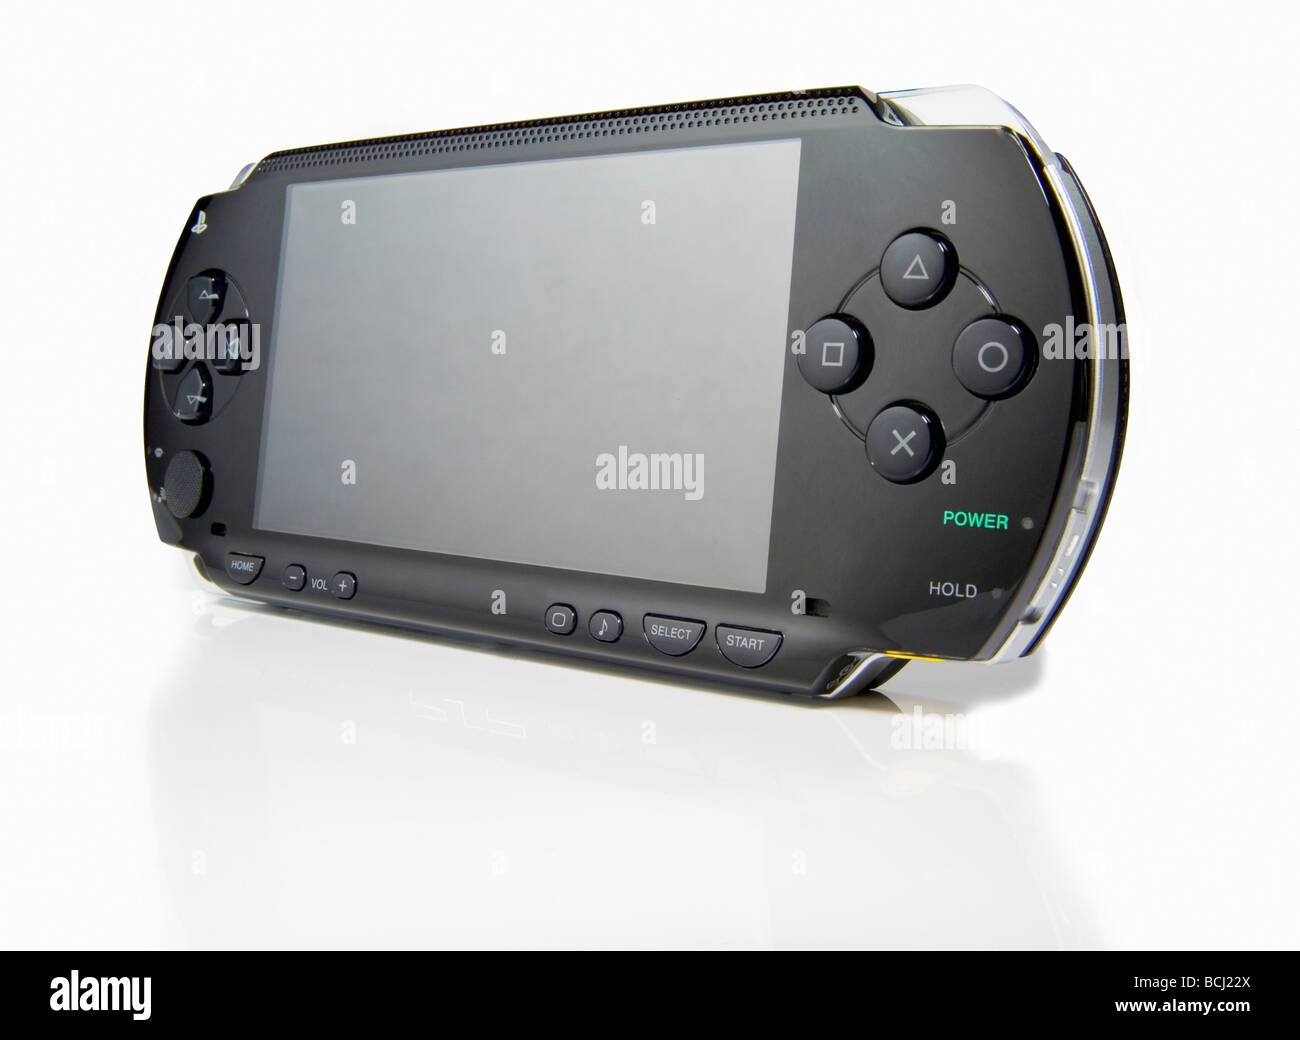 Sony PSP: mejor consola del año 2005